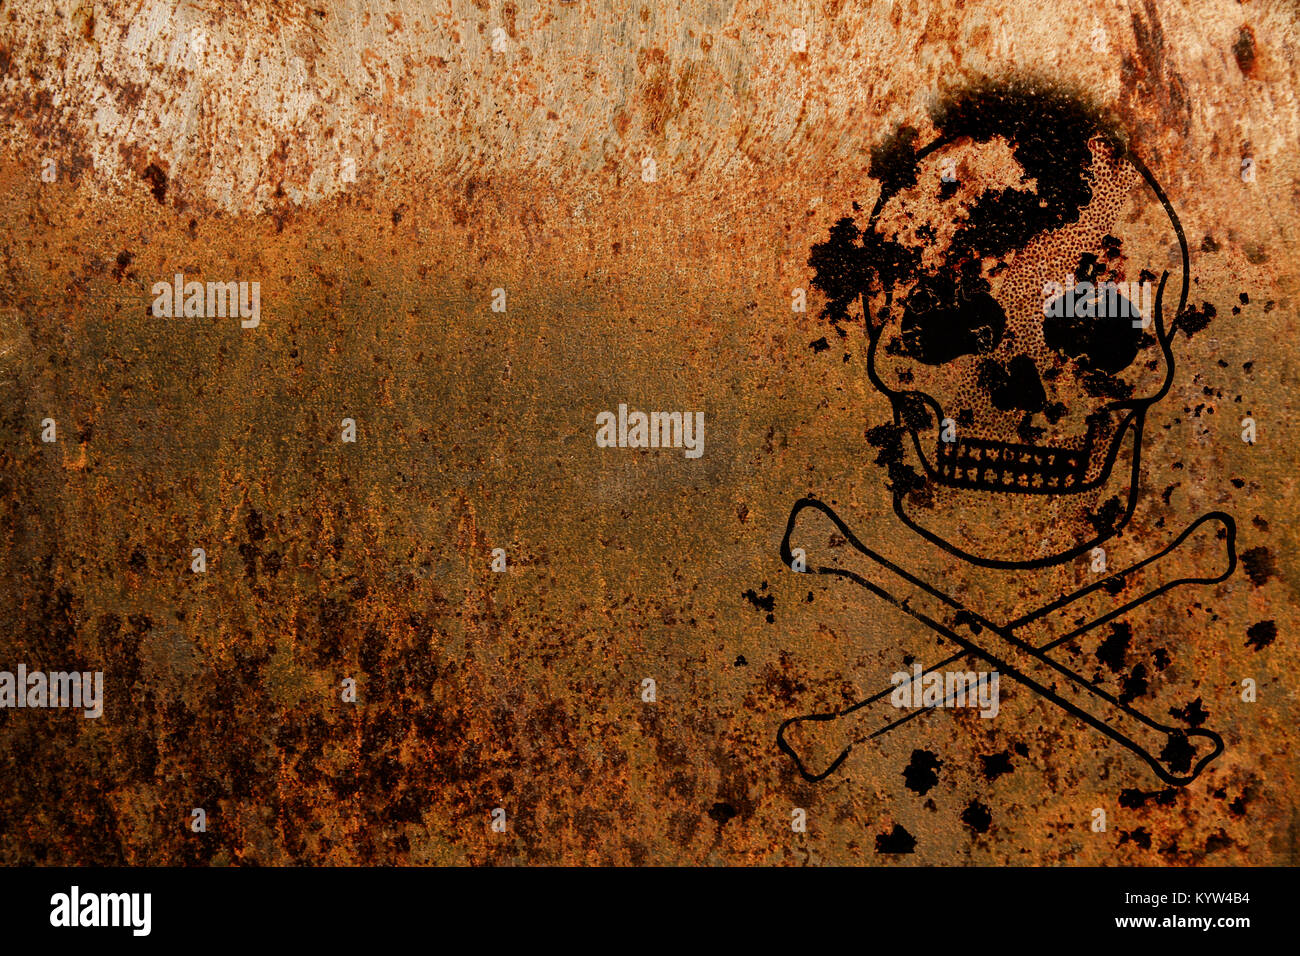 Totenkopf mit gekreuzten Knochen (symbolisch für Gefahr und lebensbedrohlich) über eine rostige Metallplatte Textur Hintergrund und der leere Raum an der Seite gemalt. Stockfoto